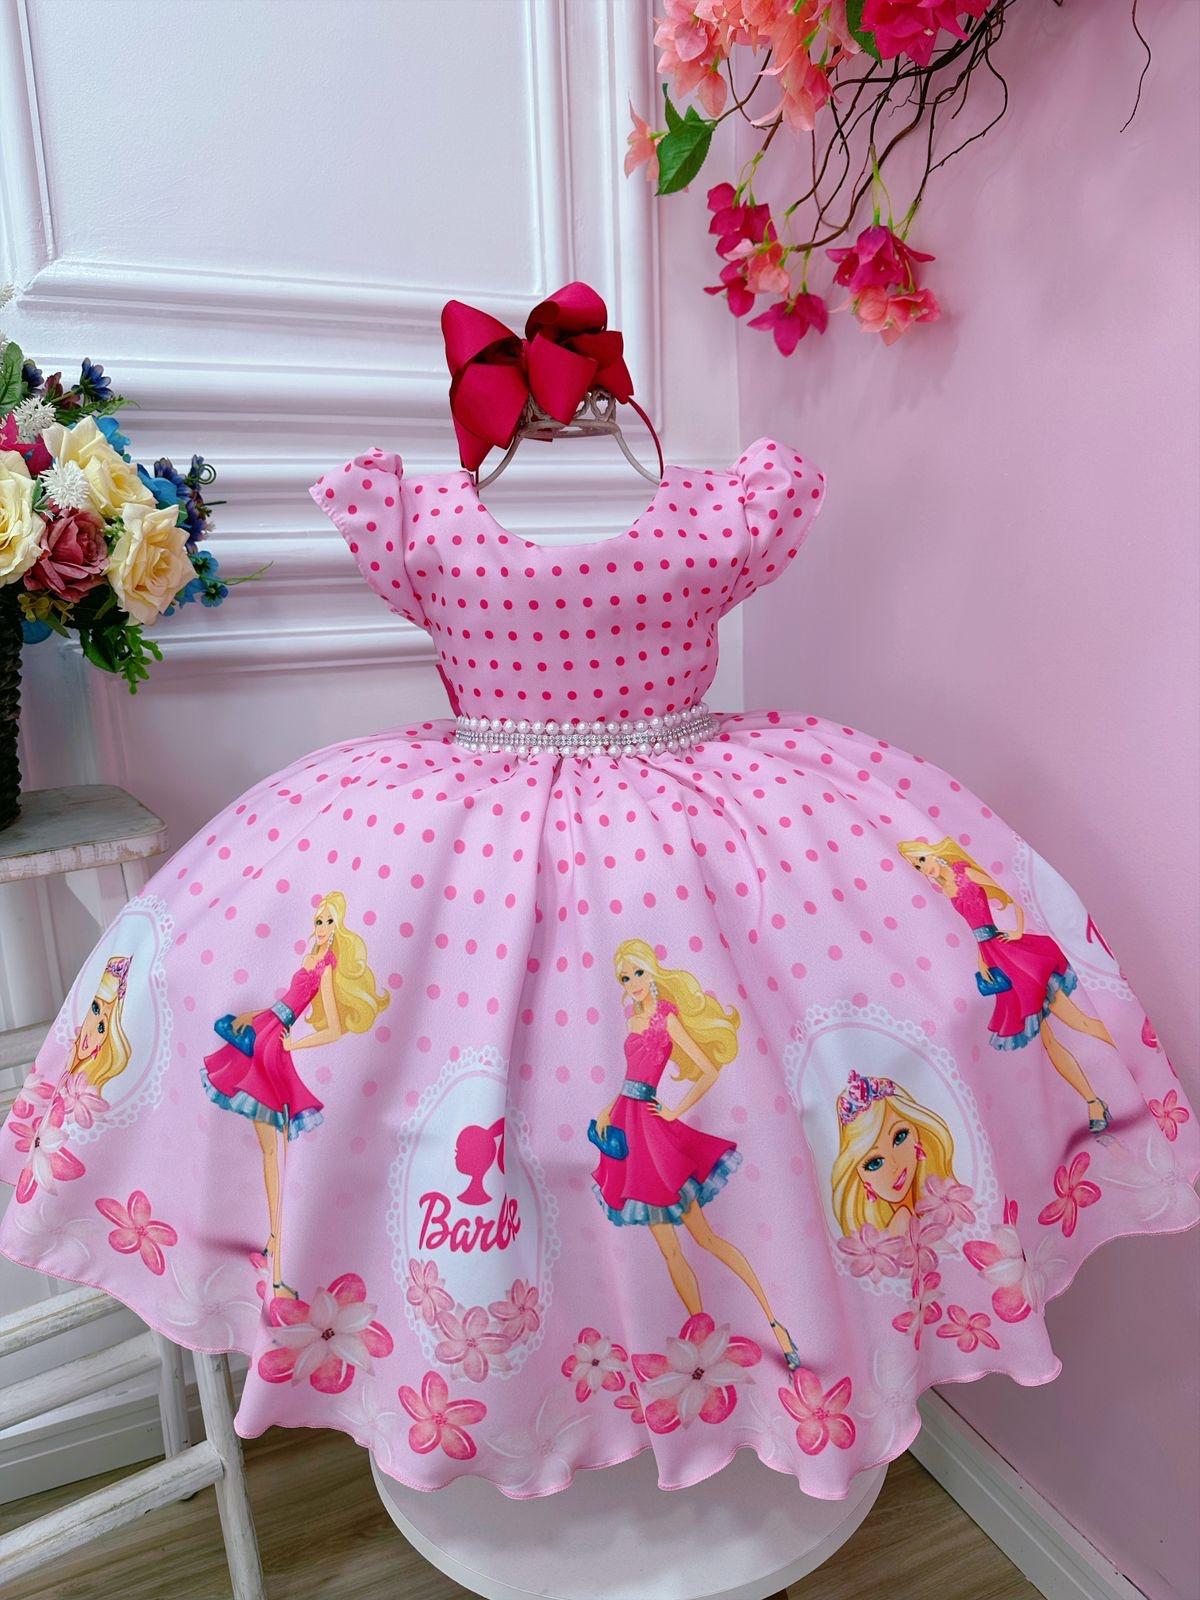 Vestido infantil Barbie Rosa C/ Cinto de Pérolas e Strass